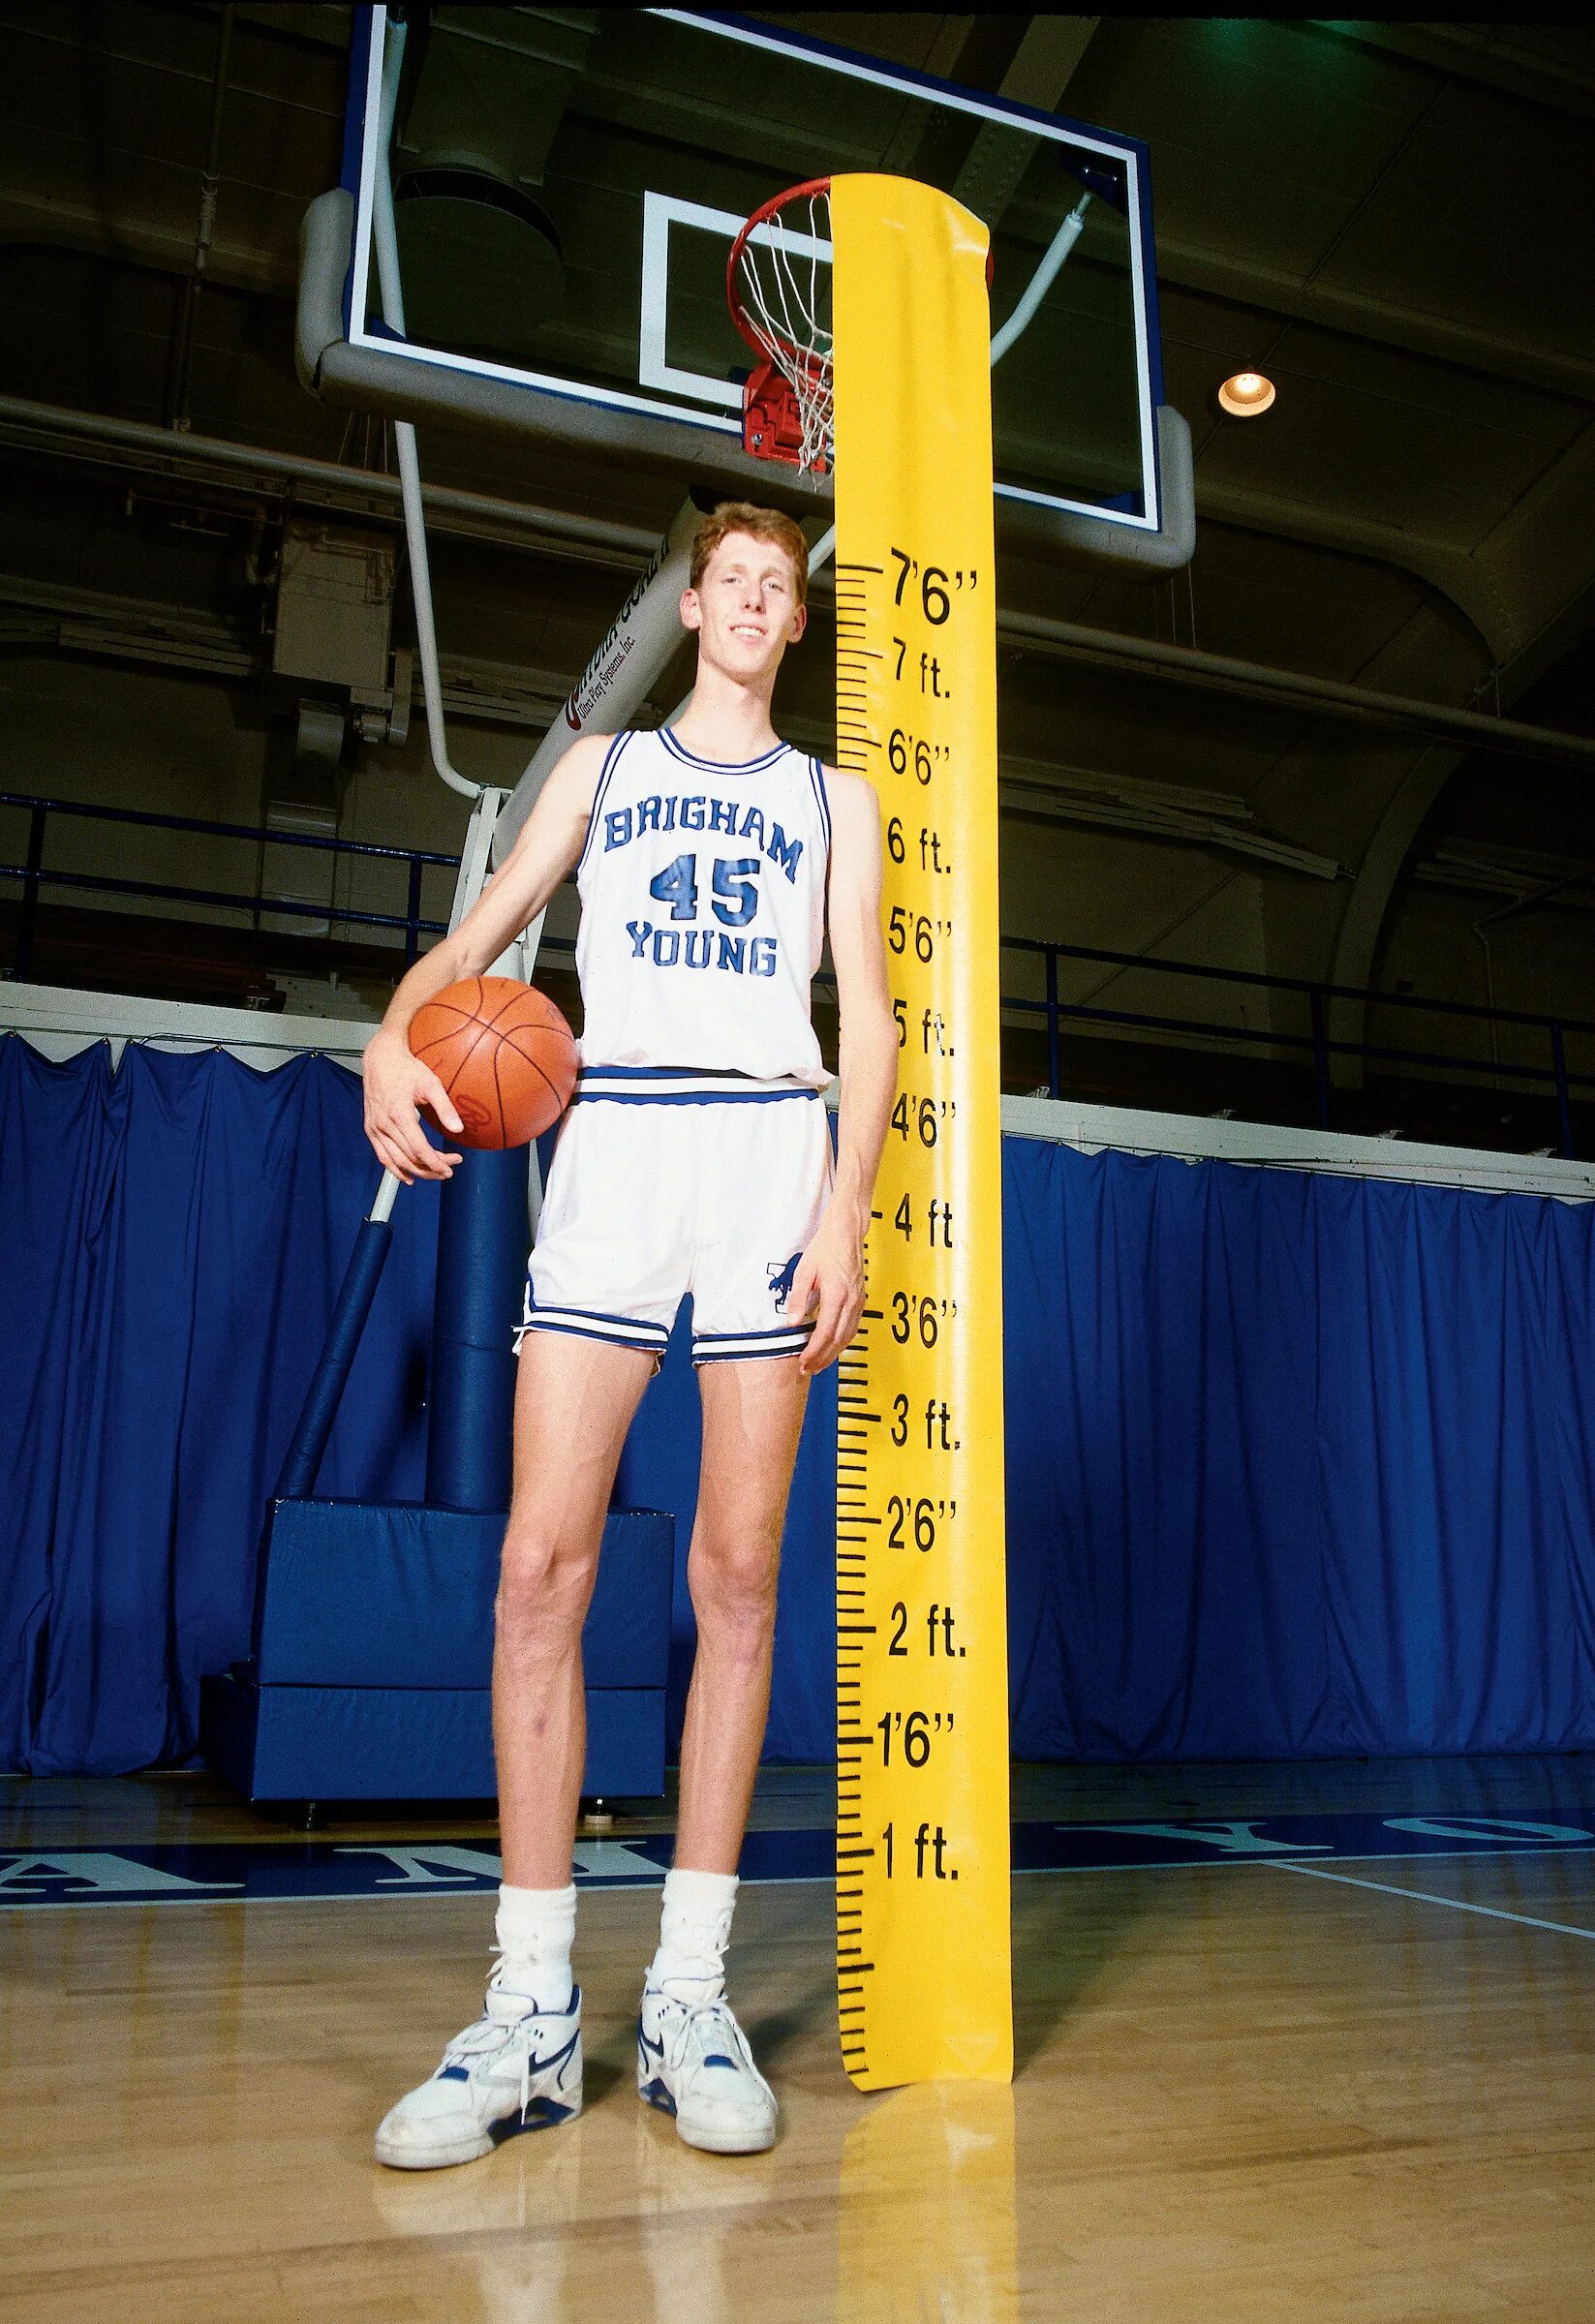 Шон Брэдли баскетболист. Шон Брэдли баскетболист рост. Мануте бол баскетболист. Мануте бол баскетболист рост.